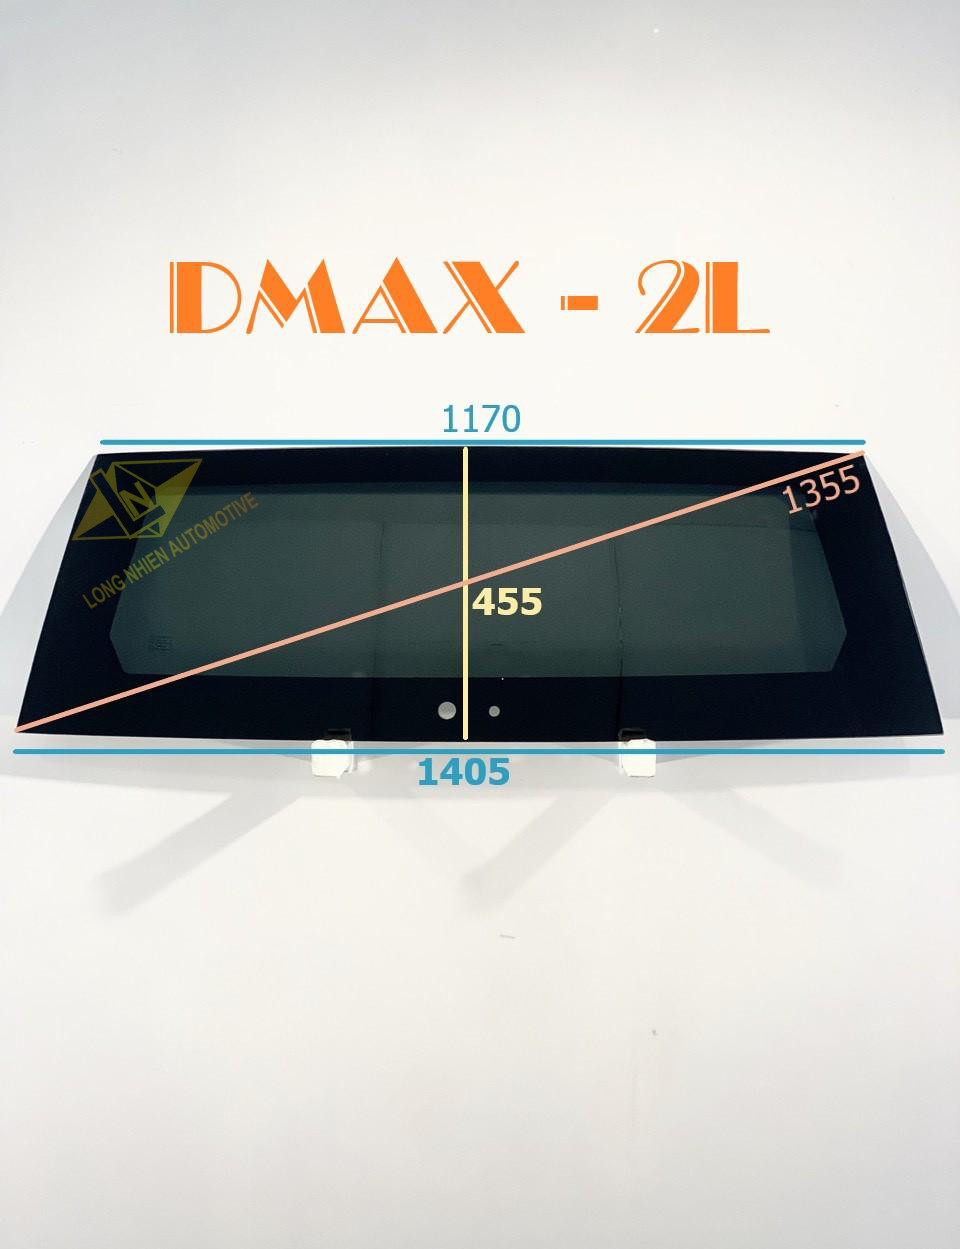 CỐP DMAX -  2L (455x1405)